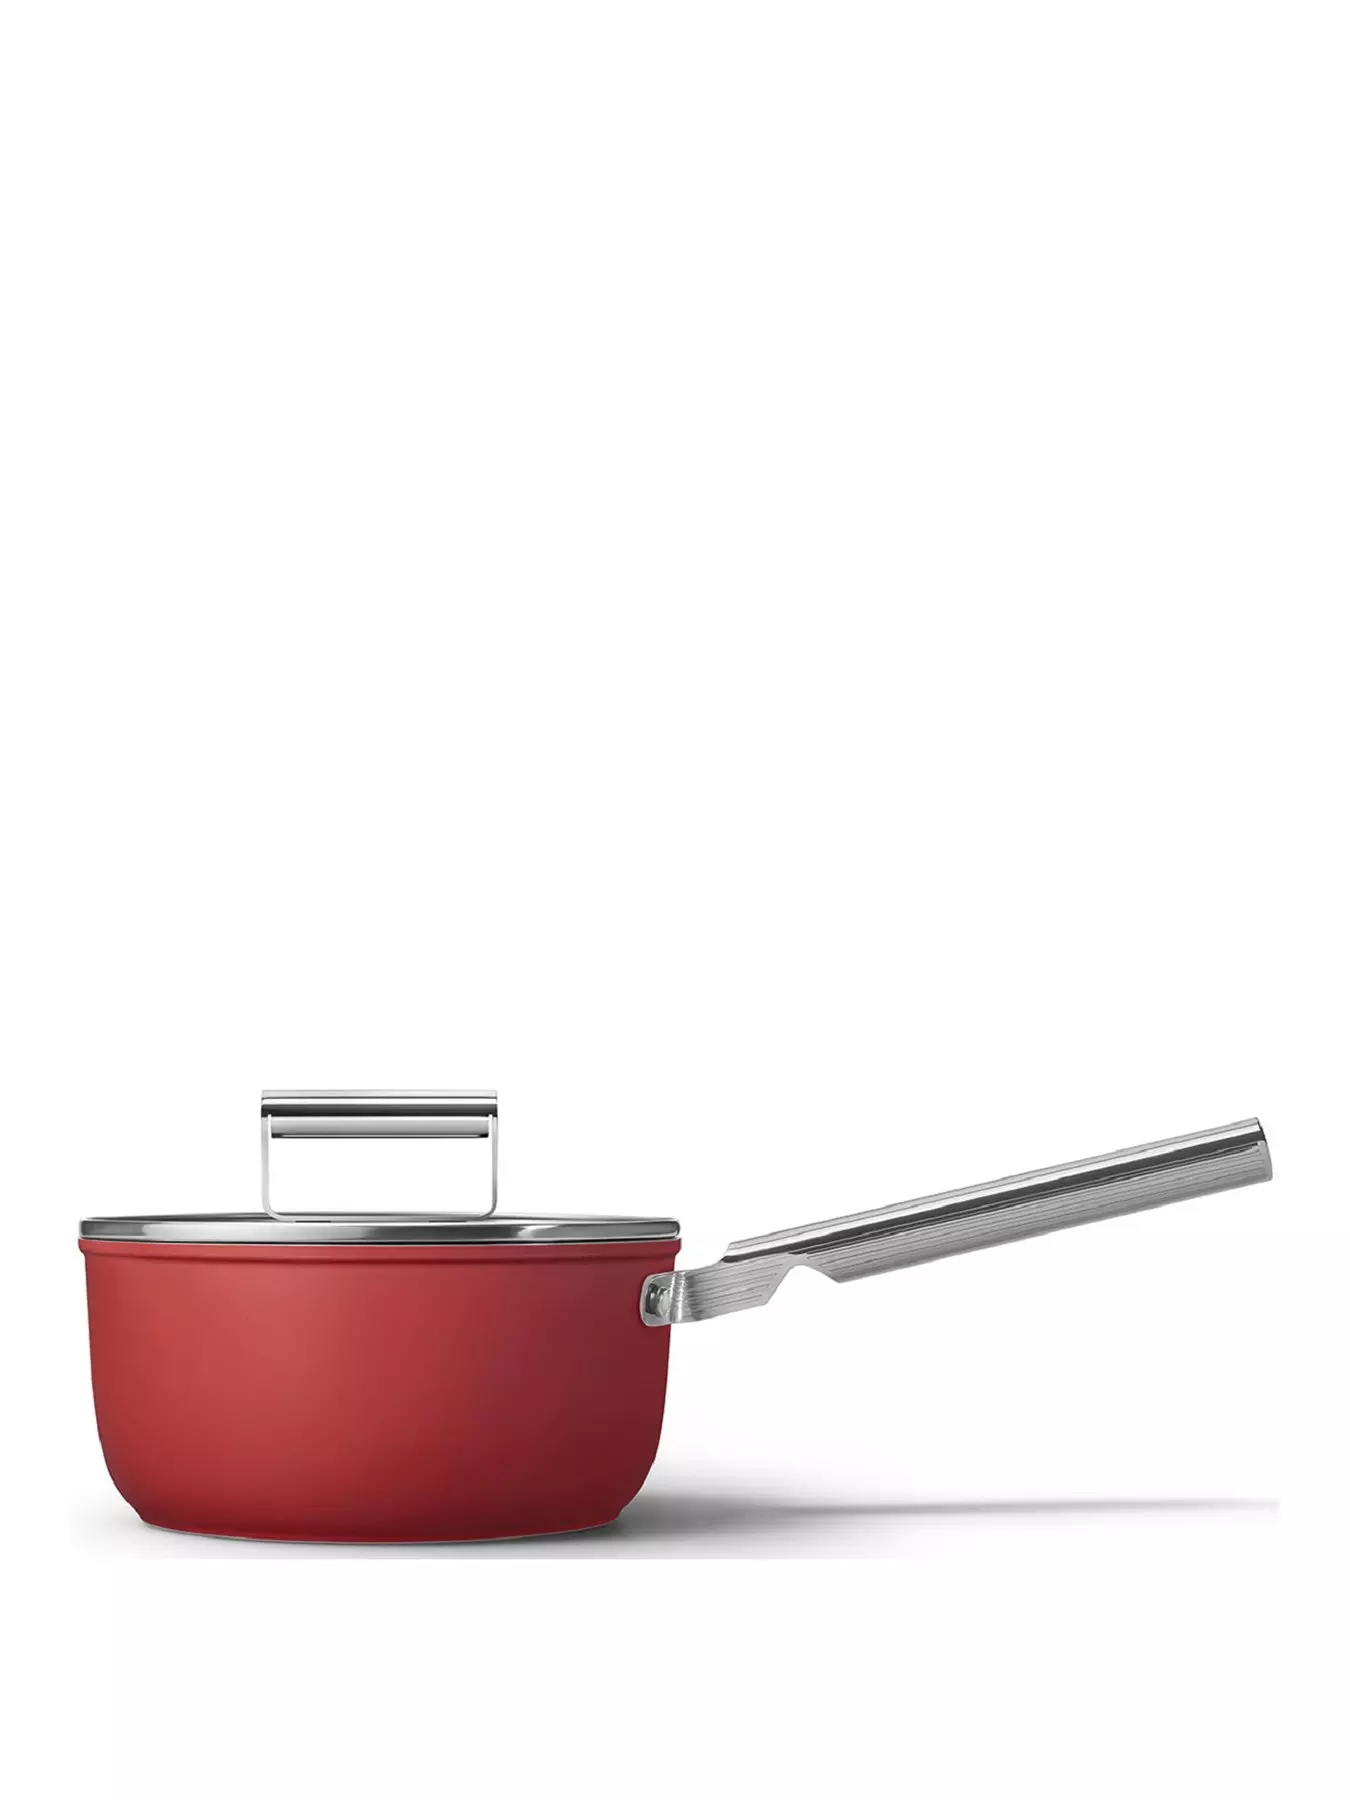 Saucepans, Under 30%, Pots & pans, Cookware, Home & garden